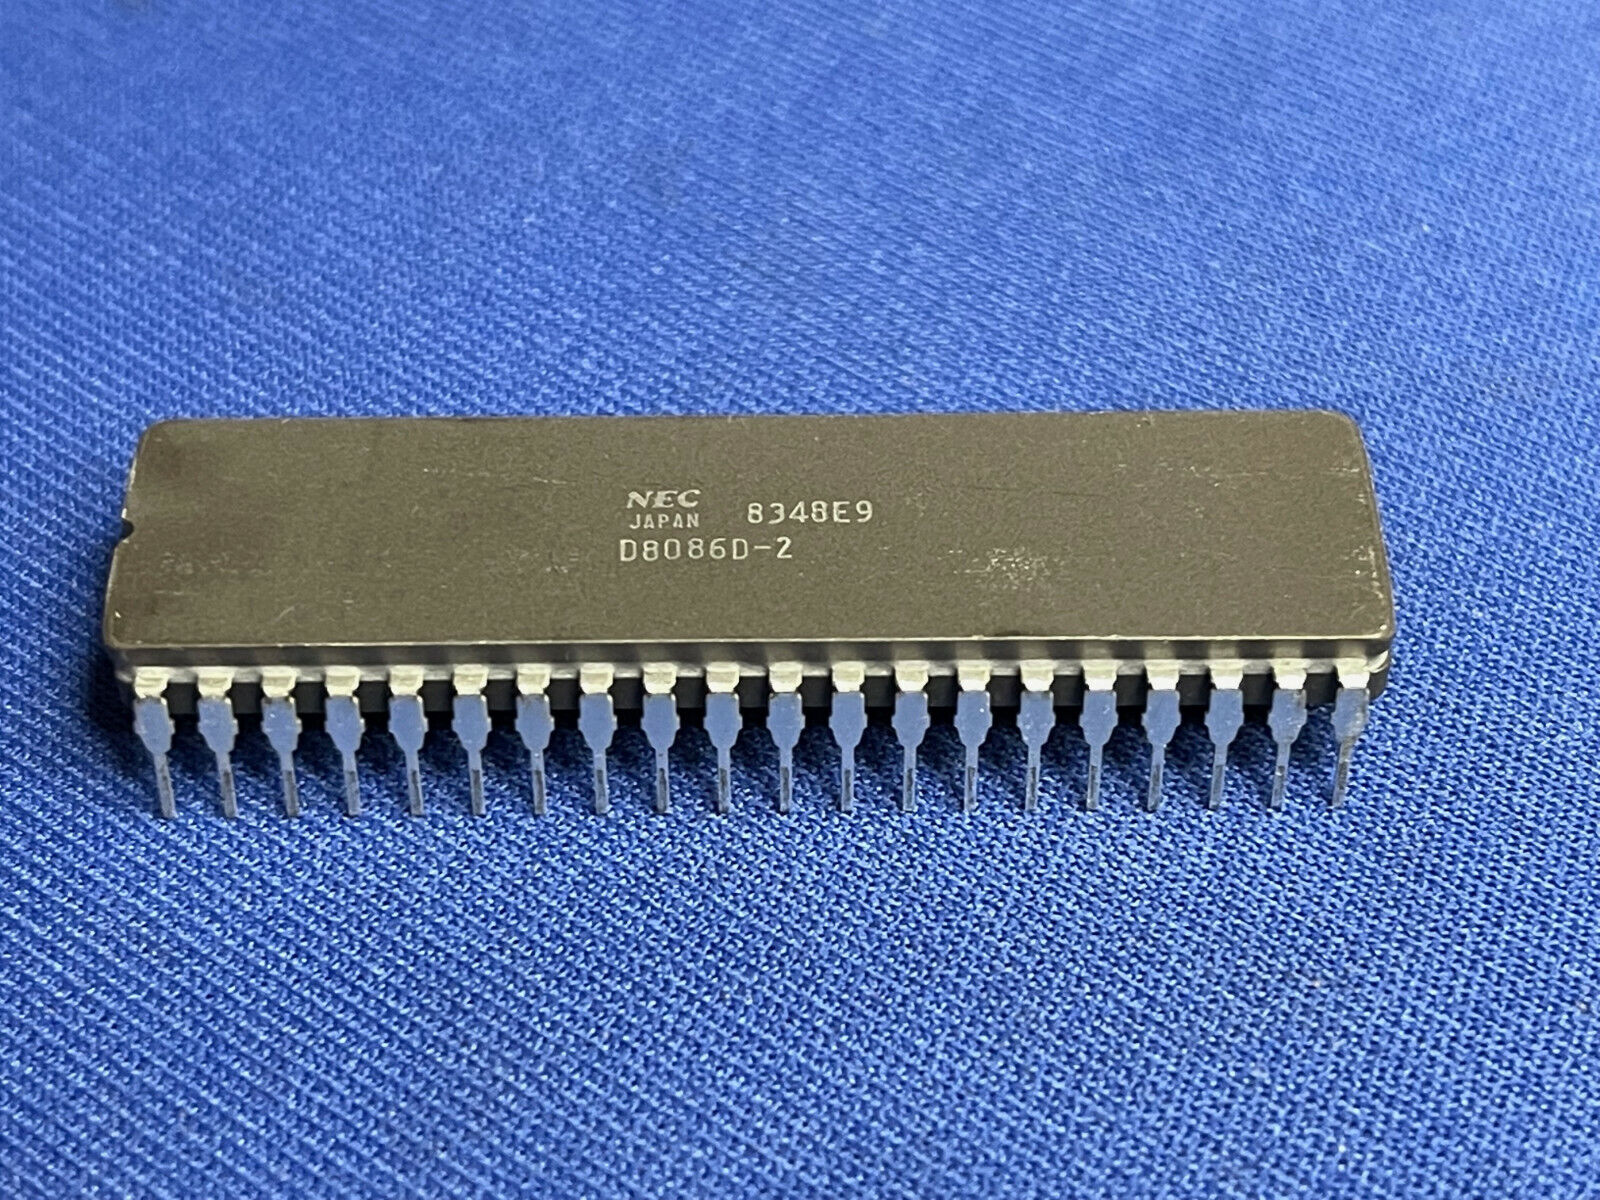 QTY-1 D8086D-2 NEC VINTAGE 1983 CPU COLLECTIBLE 40-PIN CERDIP NOS LAST ONES